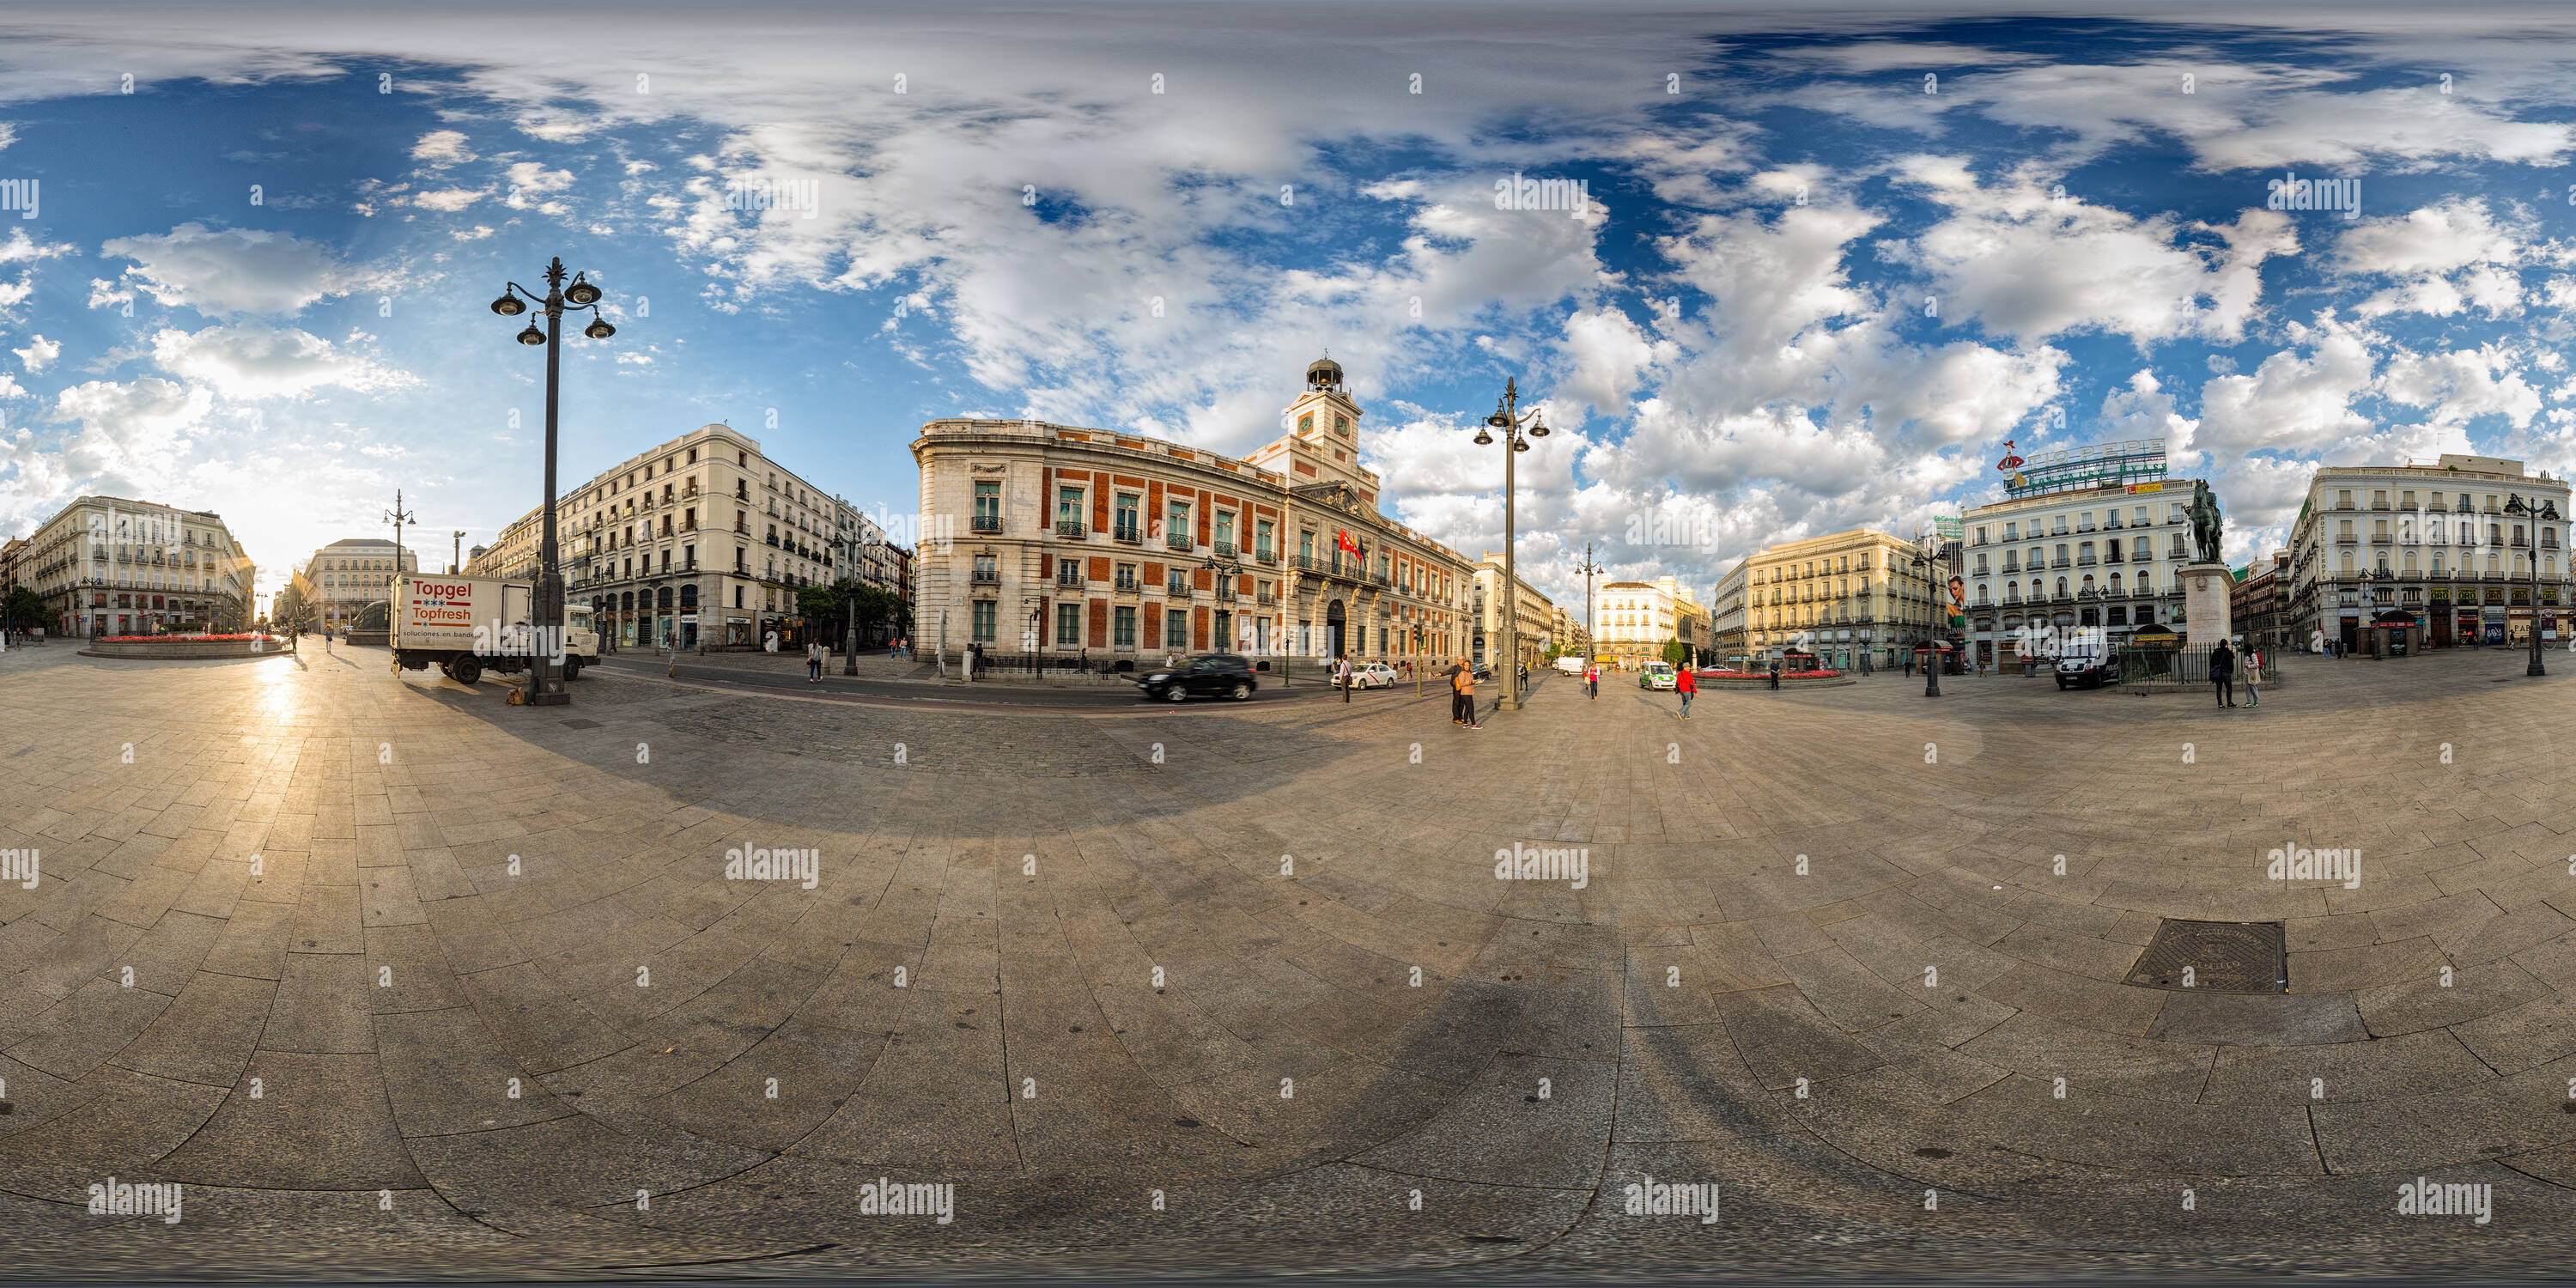 Vue panoramique à 360° de La Puerta del Sol. Madrid.